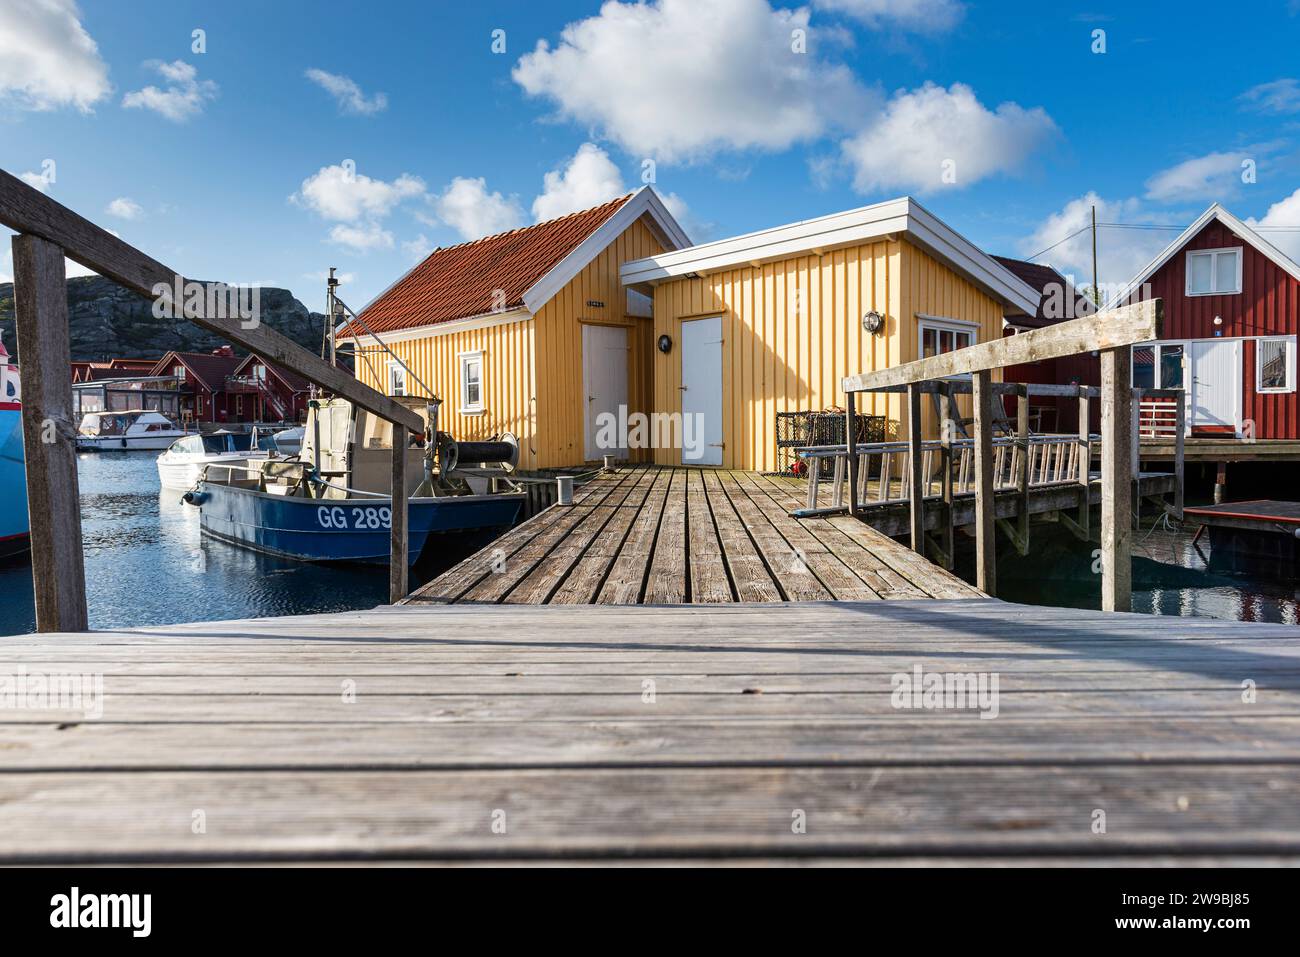 Barche da pesca presso il molo di legno del porto di fronte a una capanna gialla nel porto di Björholmen, nell'arcipelago dell'isola di Tjörn, Bohuslän, Svezia Foto Stock